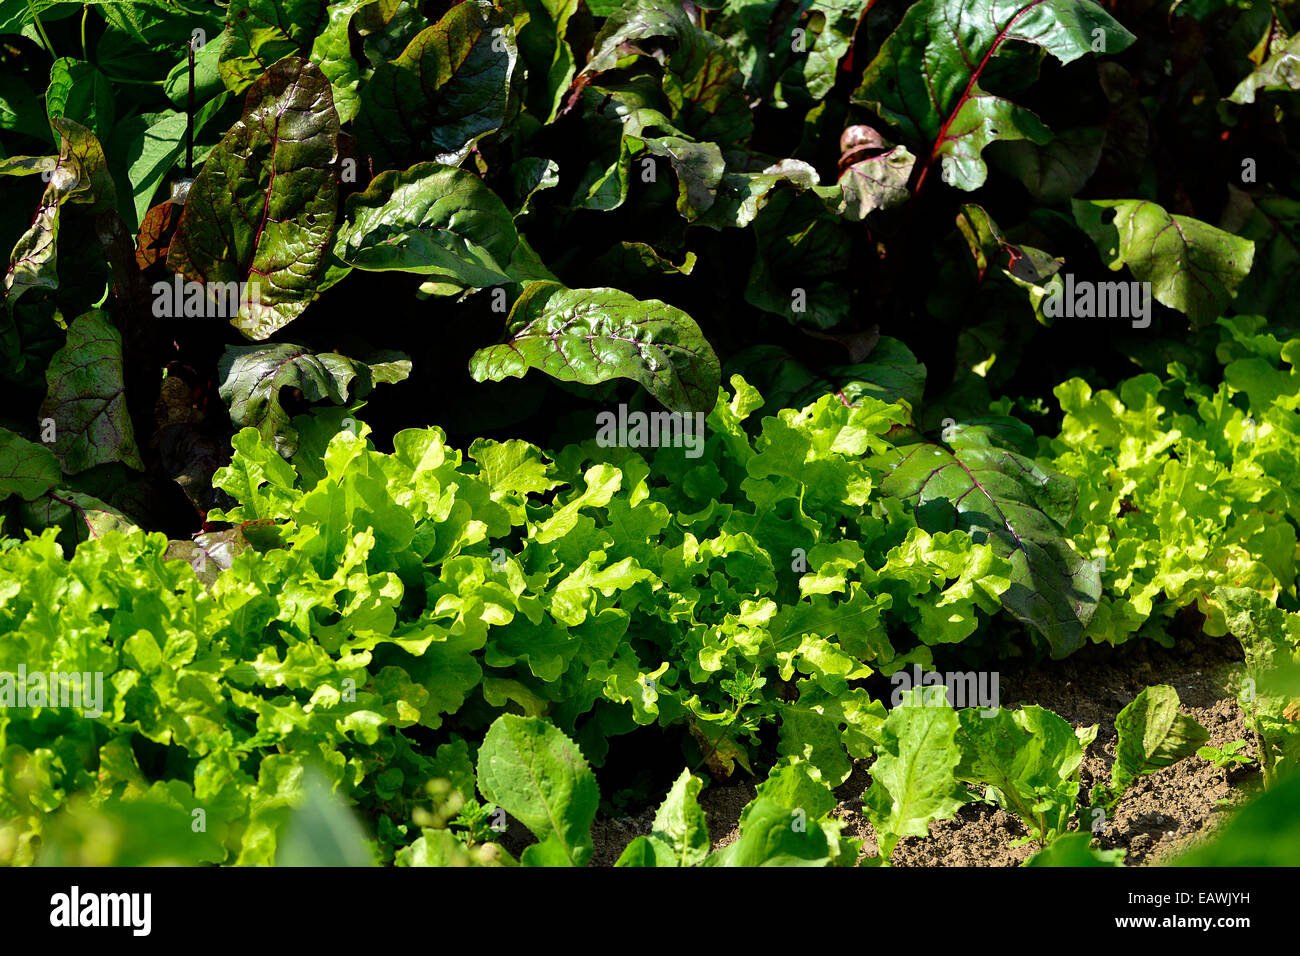 Salat 'Feuille de Chene' (Lactuca Quercina, Eichen-Blatt) und rote Beete (Beta Vulgaris var. Rubra) in einem Garten. Stockfoto